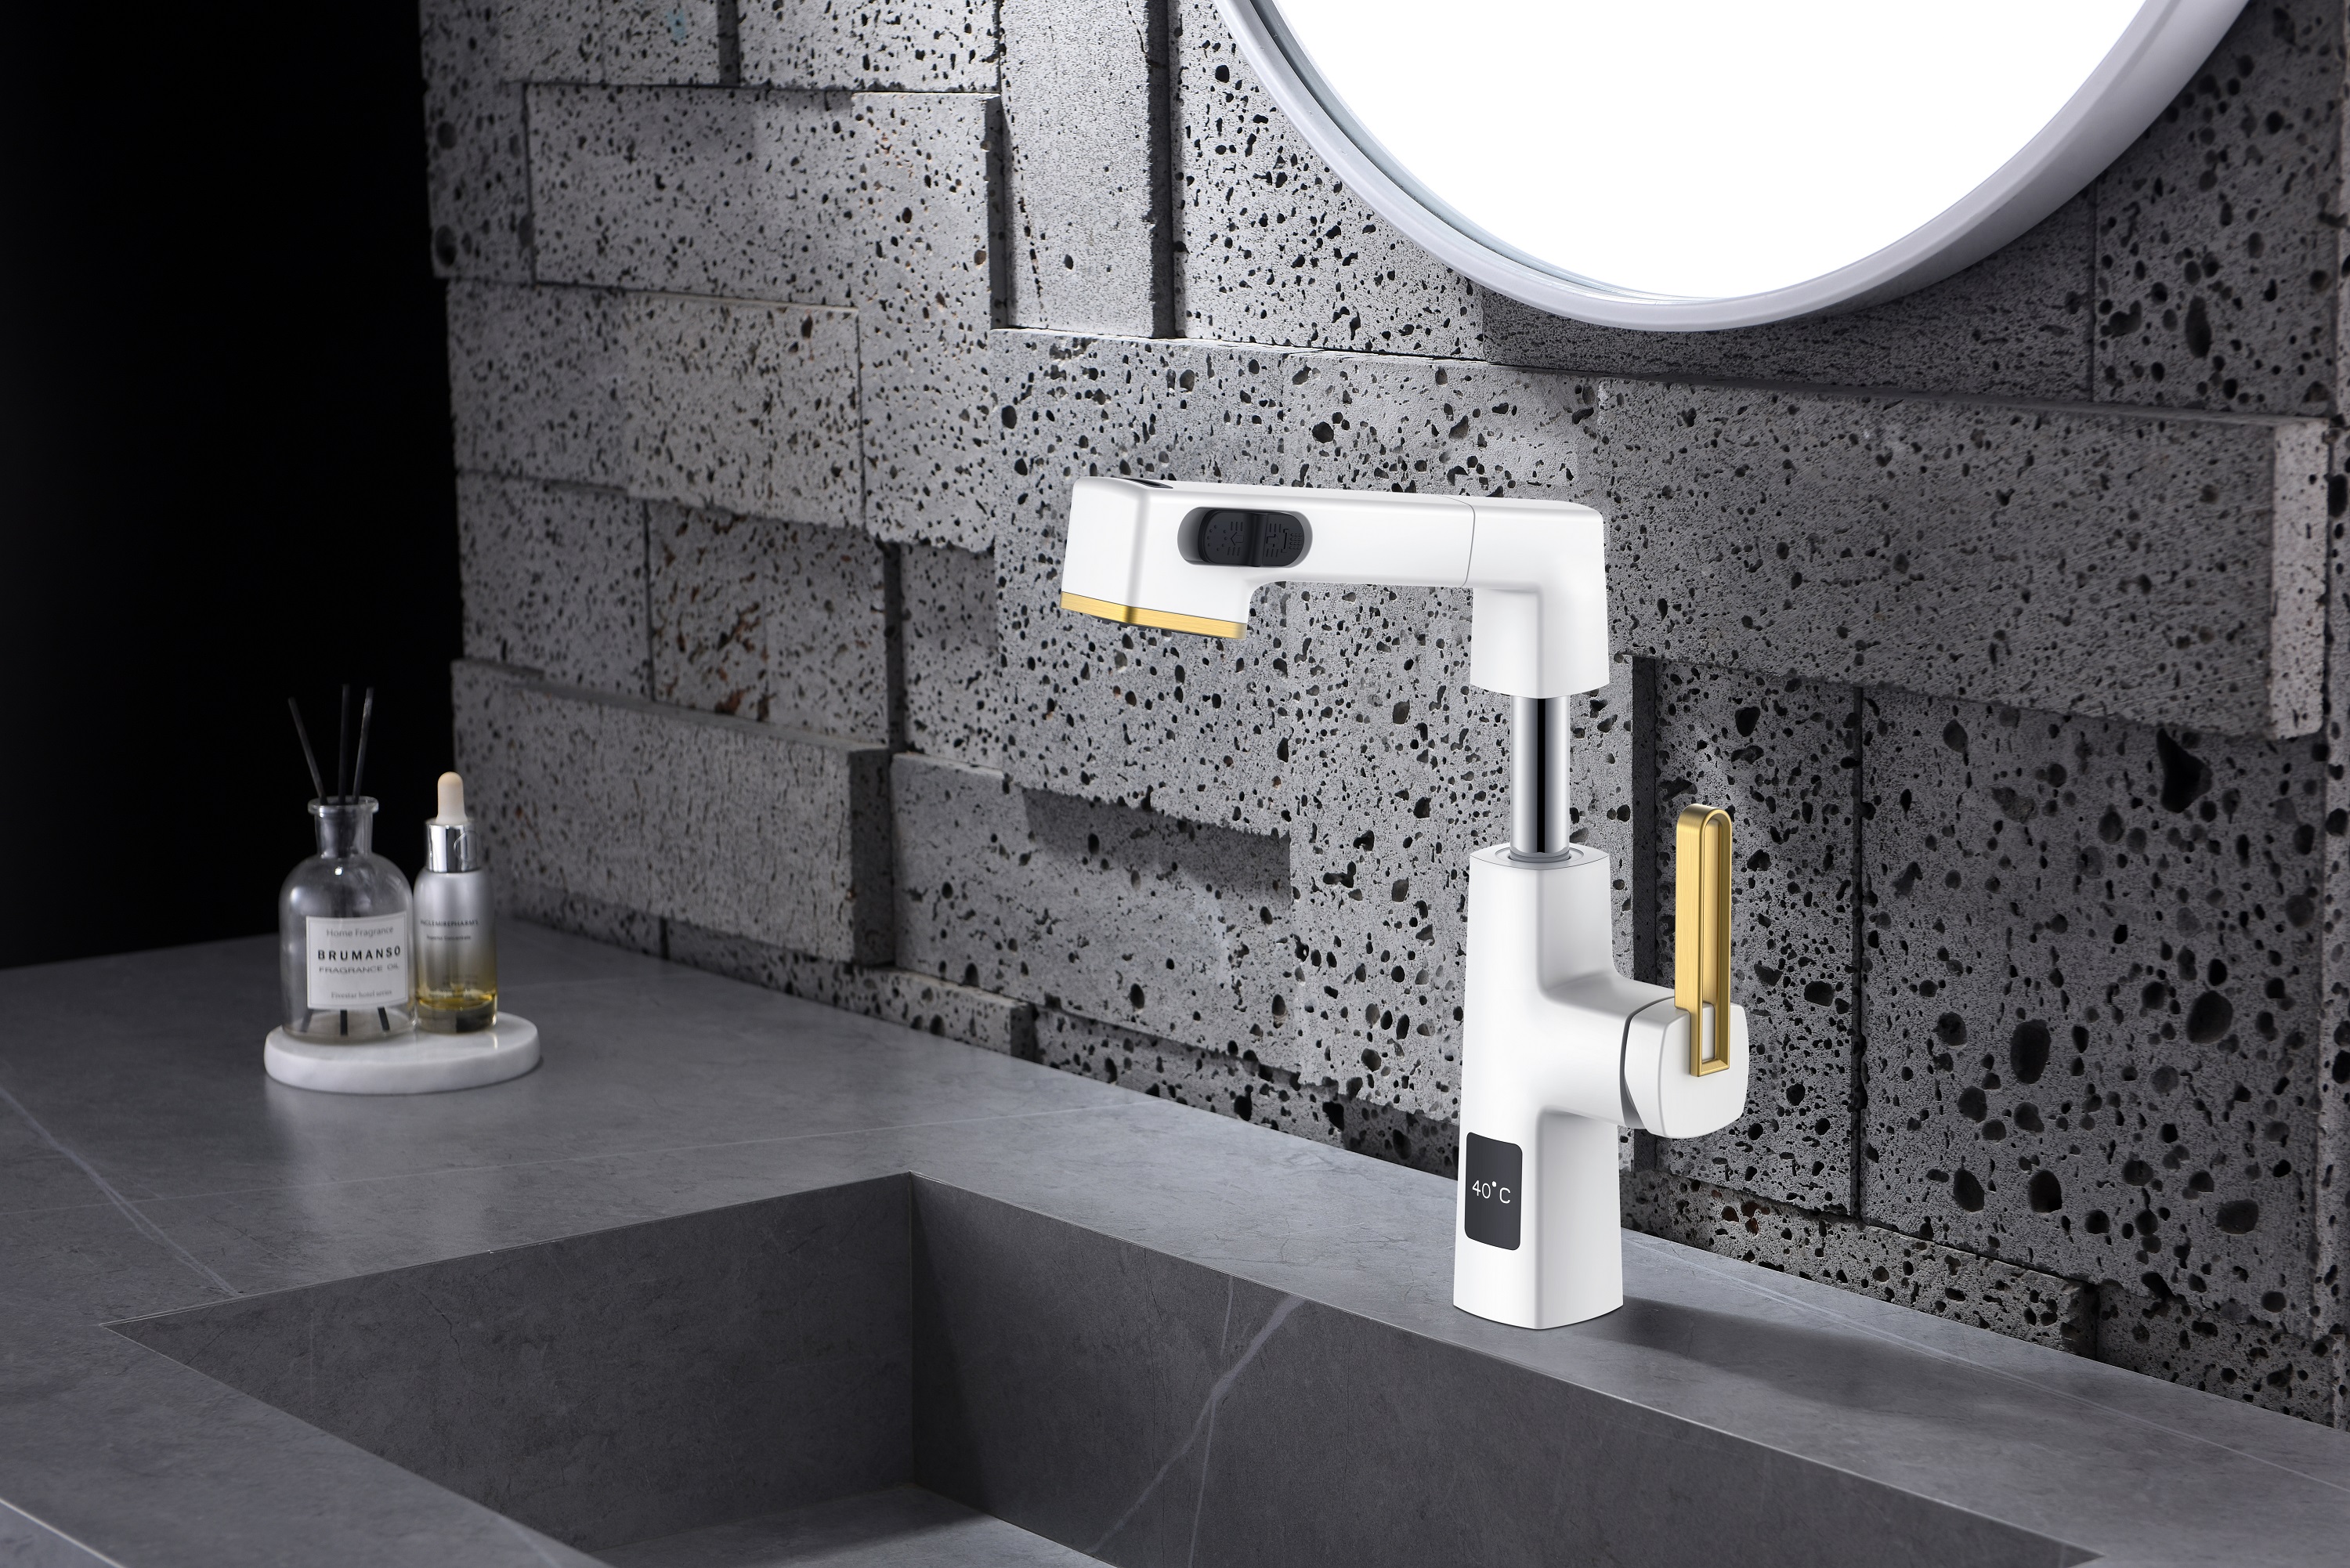  Hauteur réglable de robinet de salle de bains de noir de conception unique d'affichage de la température